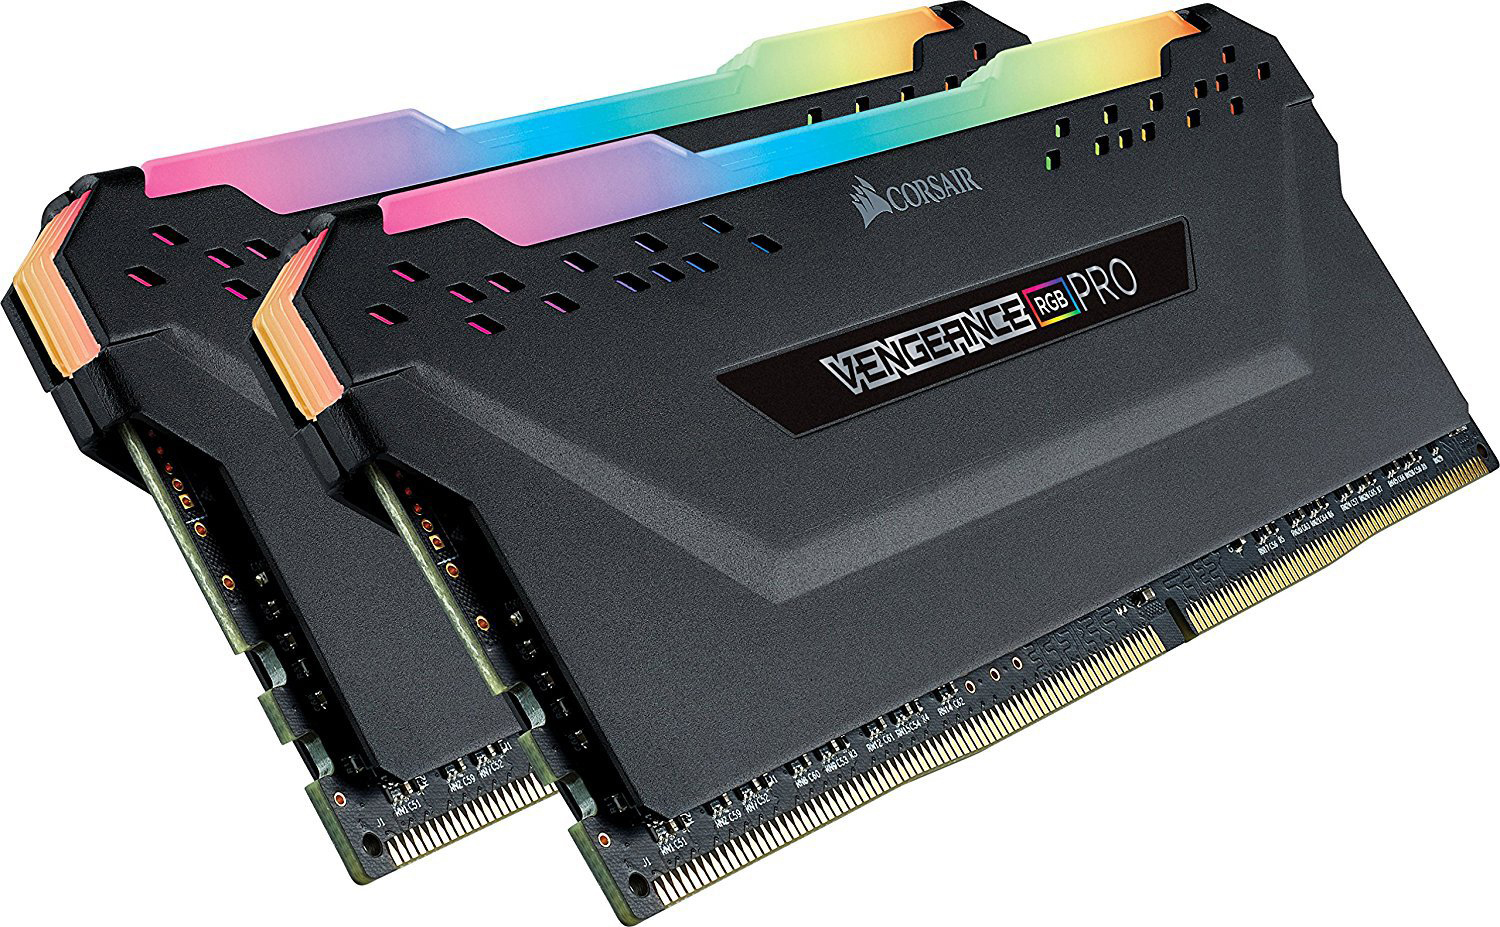 CORSAIR Vengeance 16 DDR4 RGB PRO GB Arbeitsspeicher